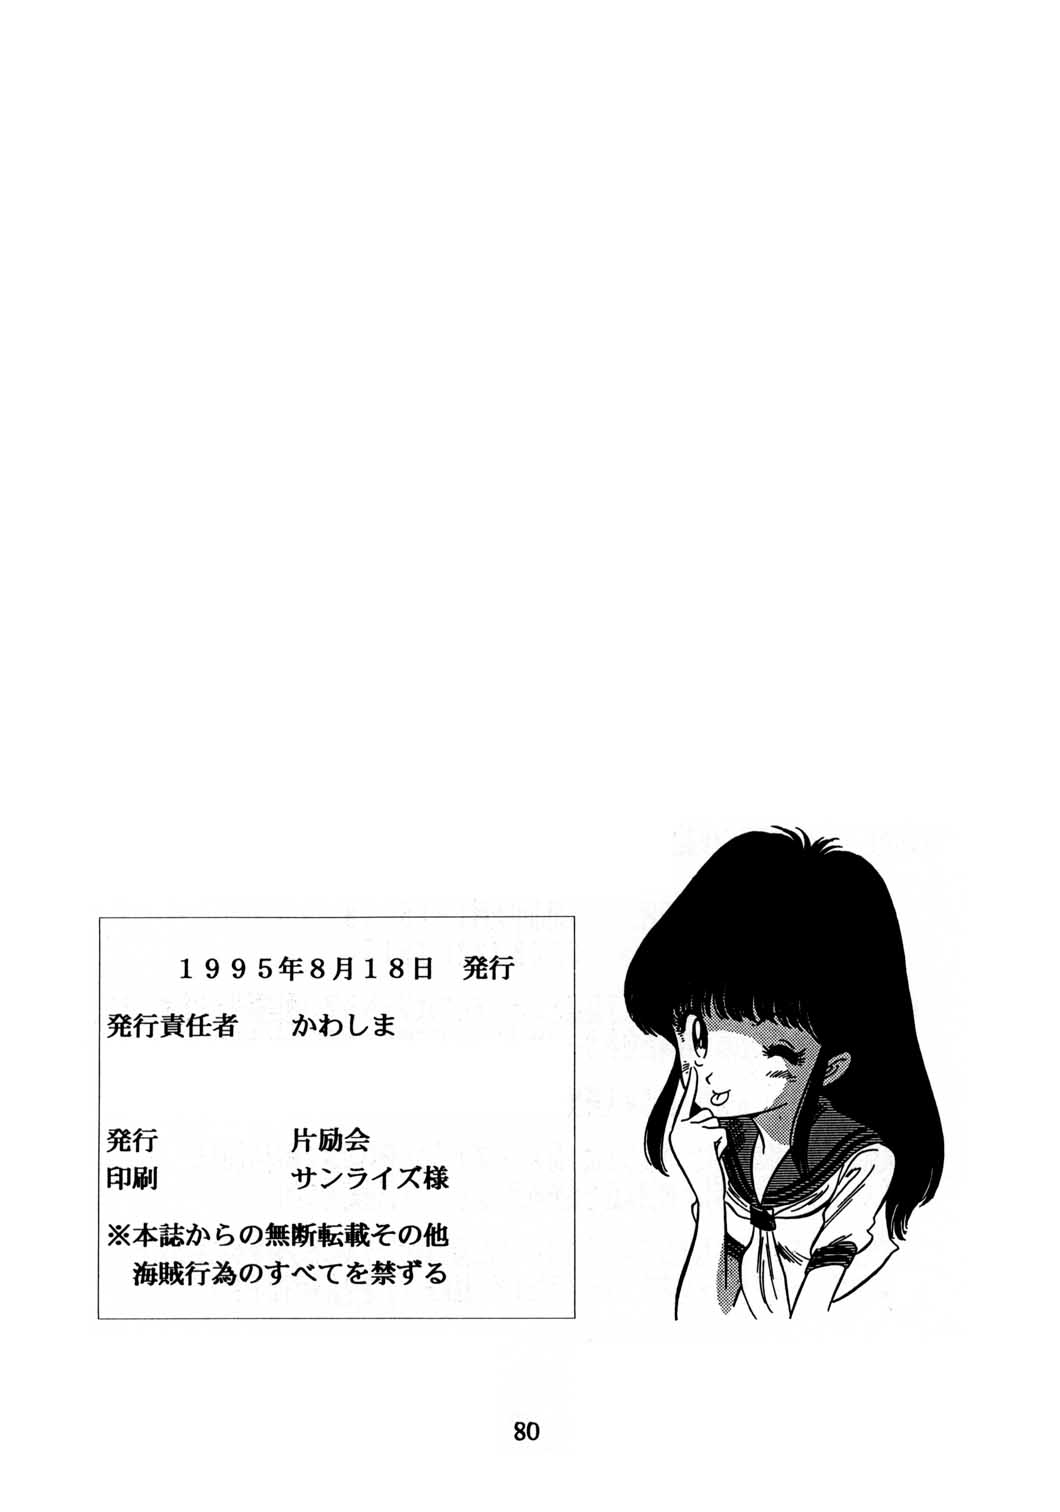 [片励会 (かわらじま晃)] 片励会スペシャル vol.8 (よろず)